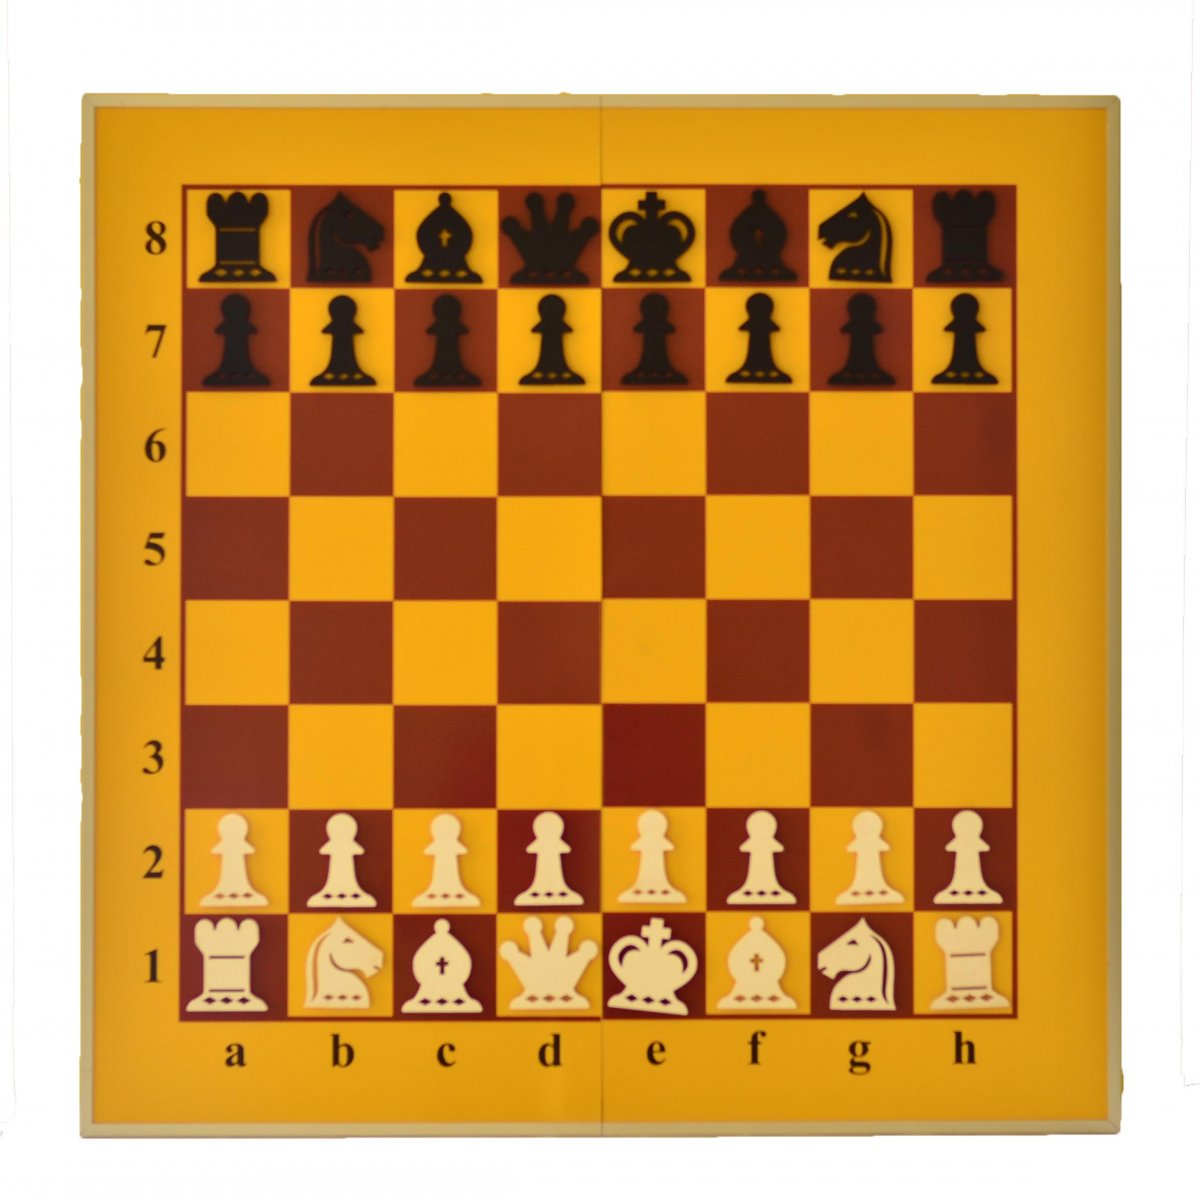 Изображение шахматной доски с фигурами